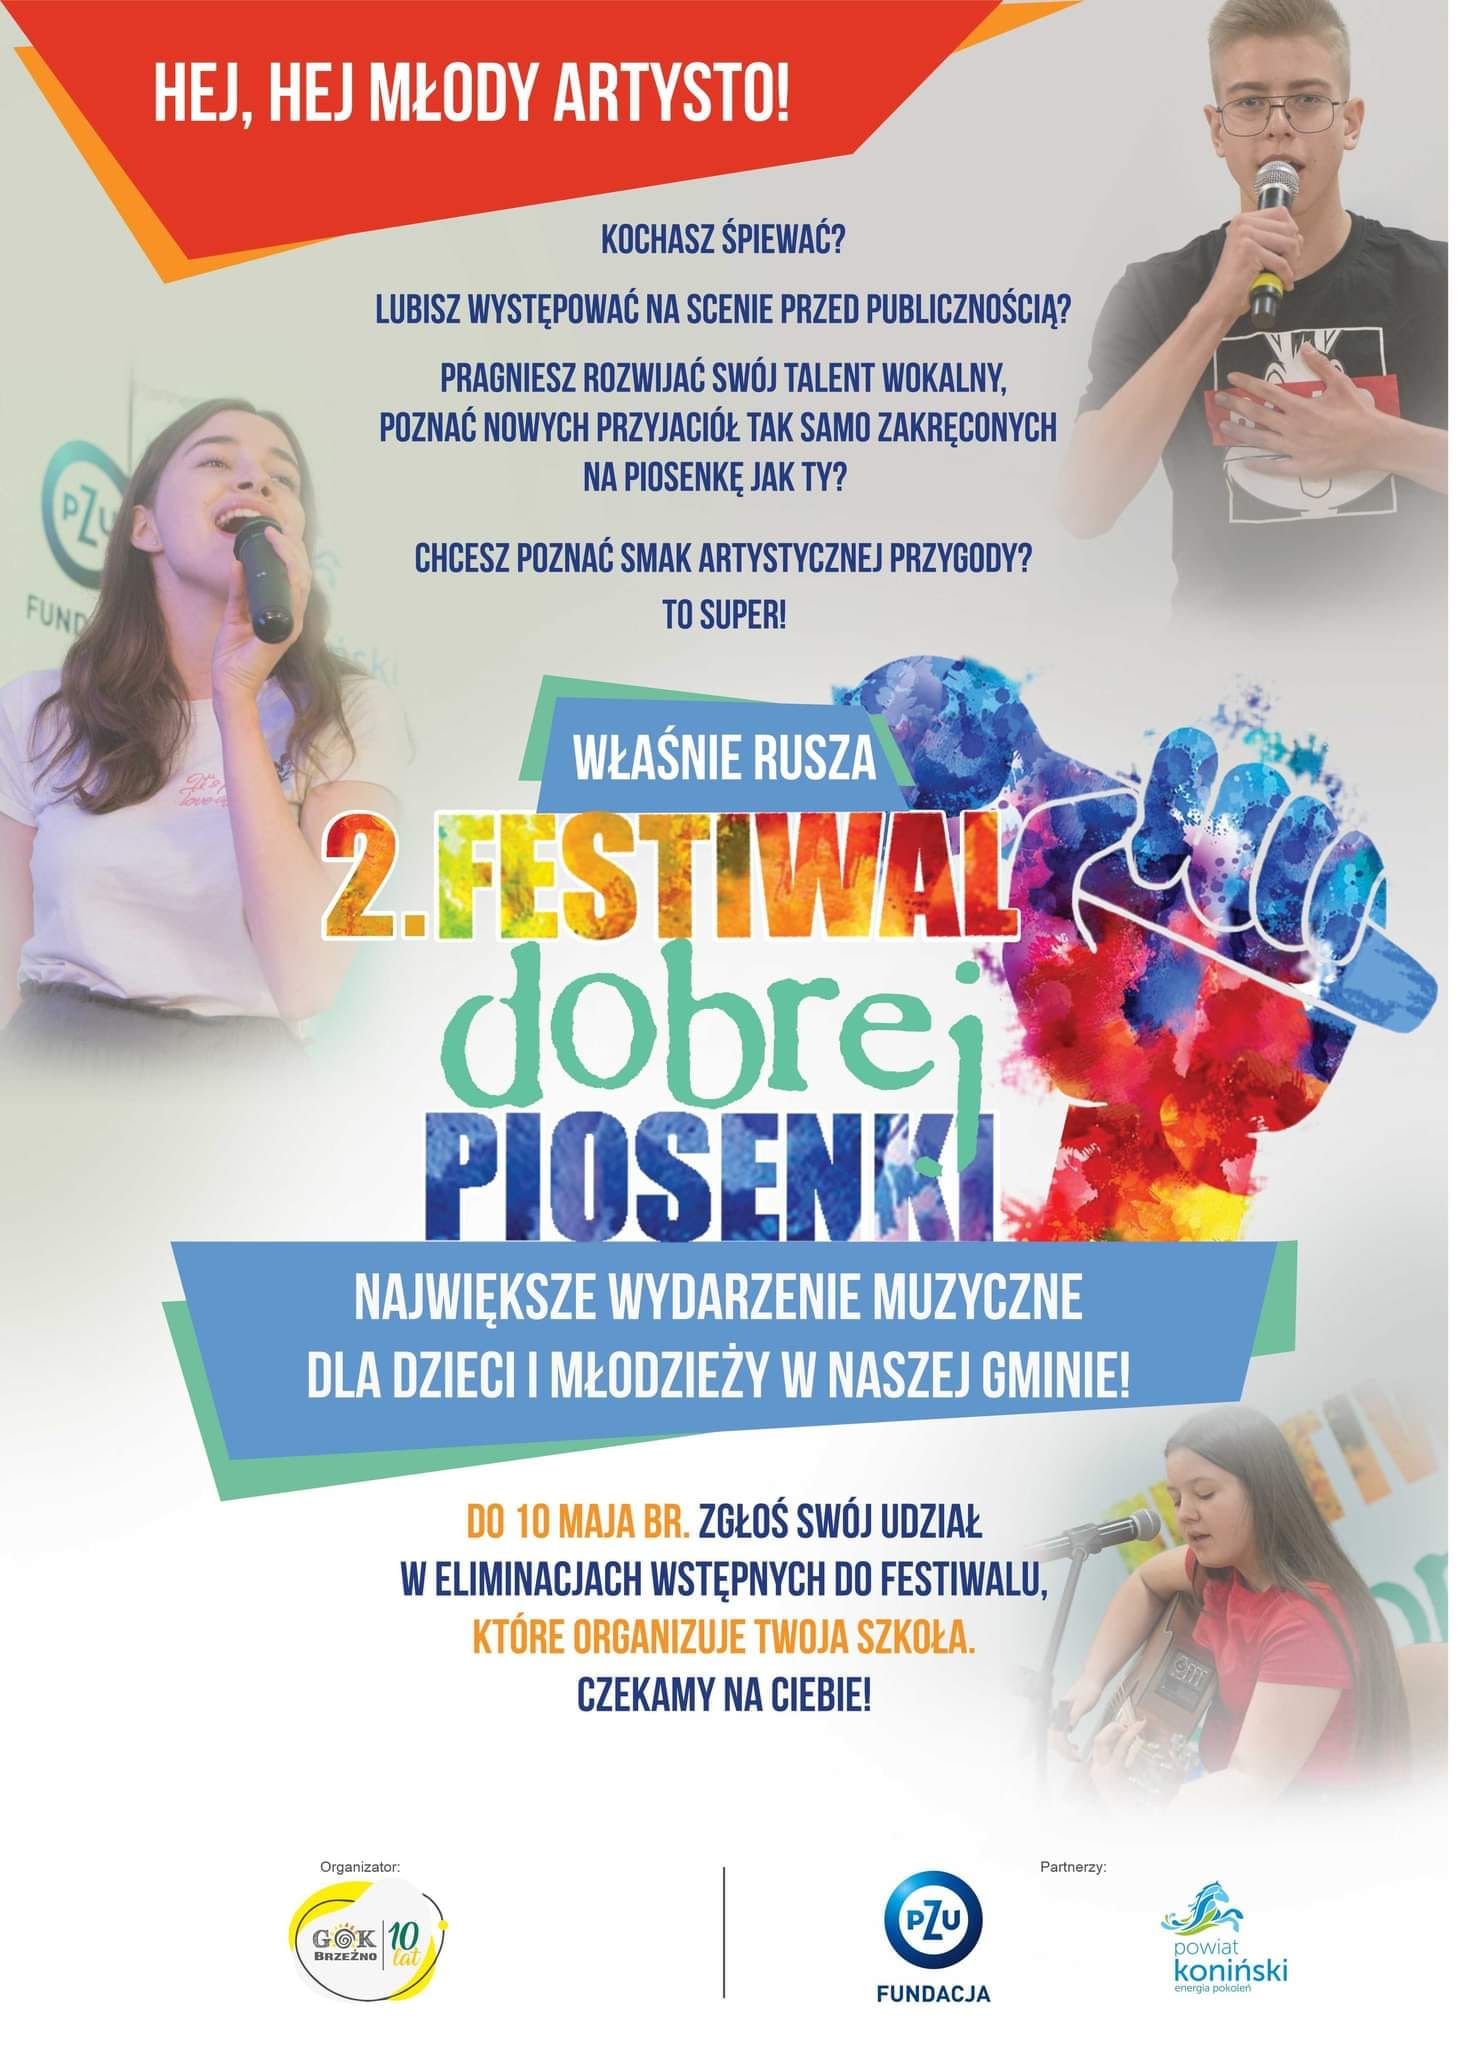 Plakat reklamujący festiwal